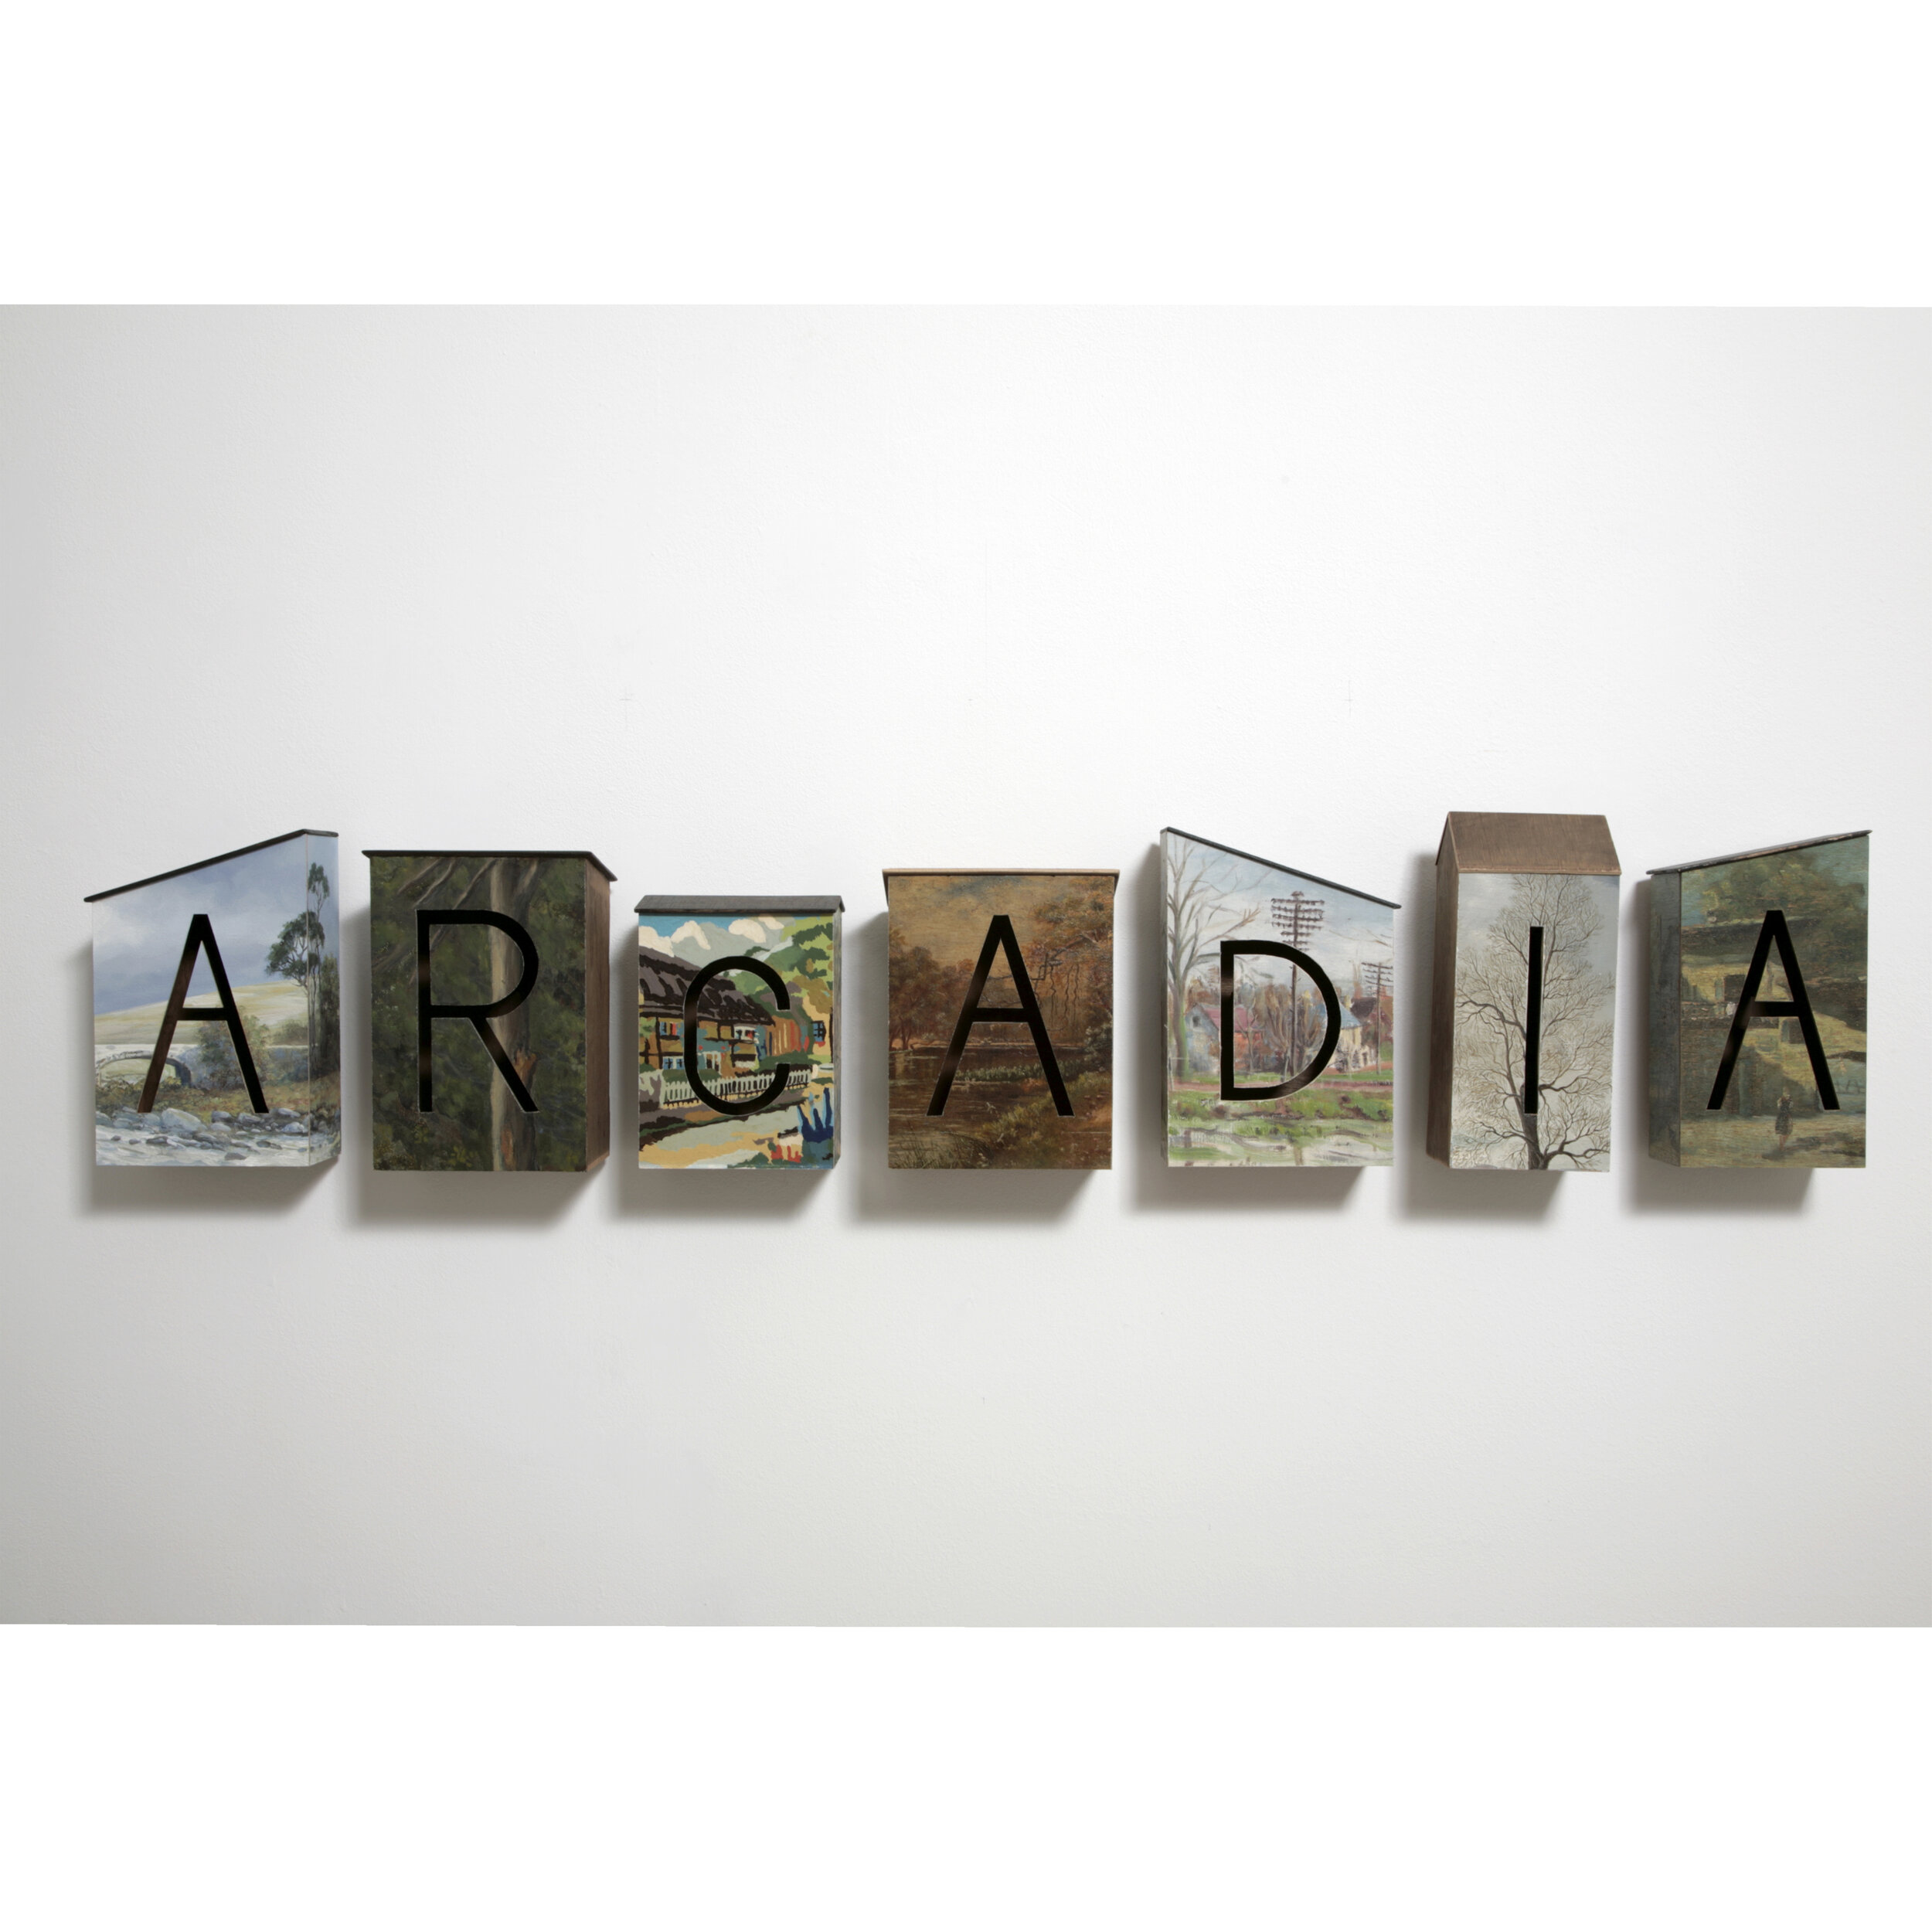 Arcadia 2013